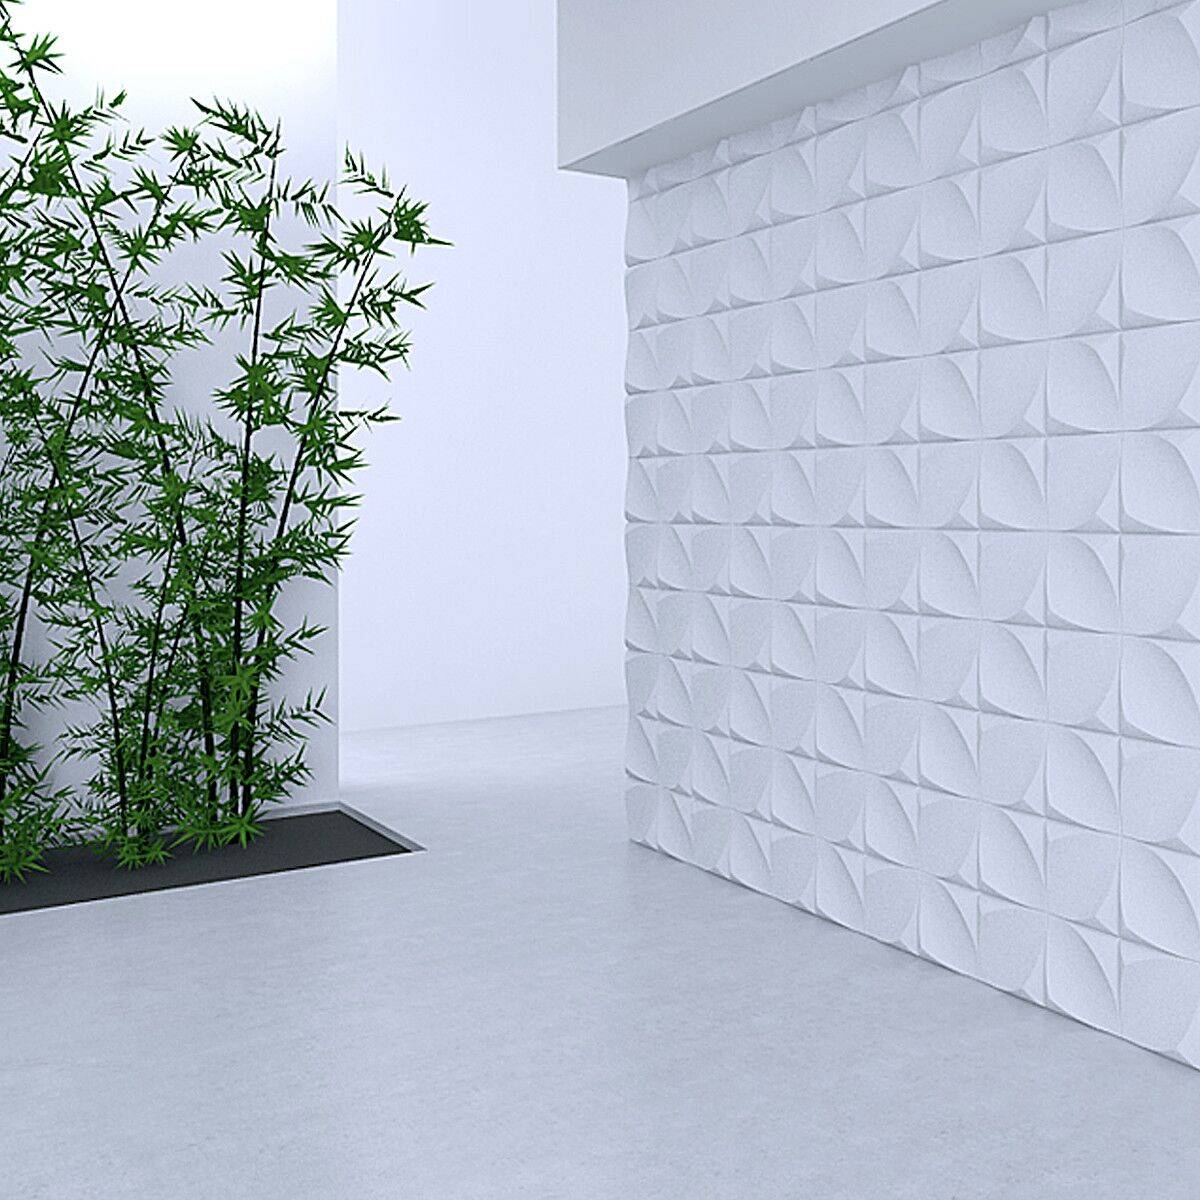 Стеновые панели леруа мерлен: декоративное оформление и варианты дизайна при помощи стеновых панелей (185 фото)